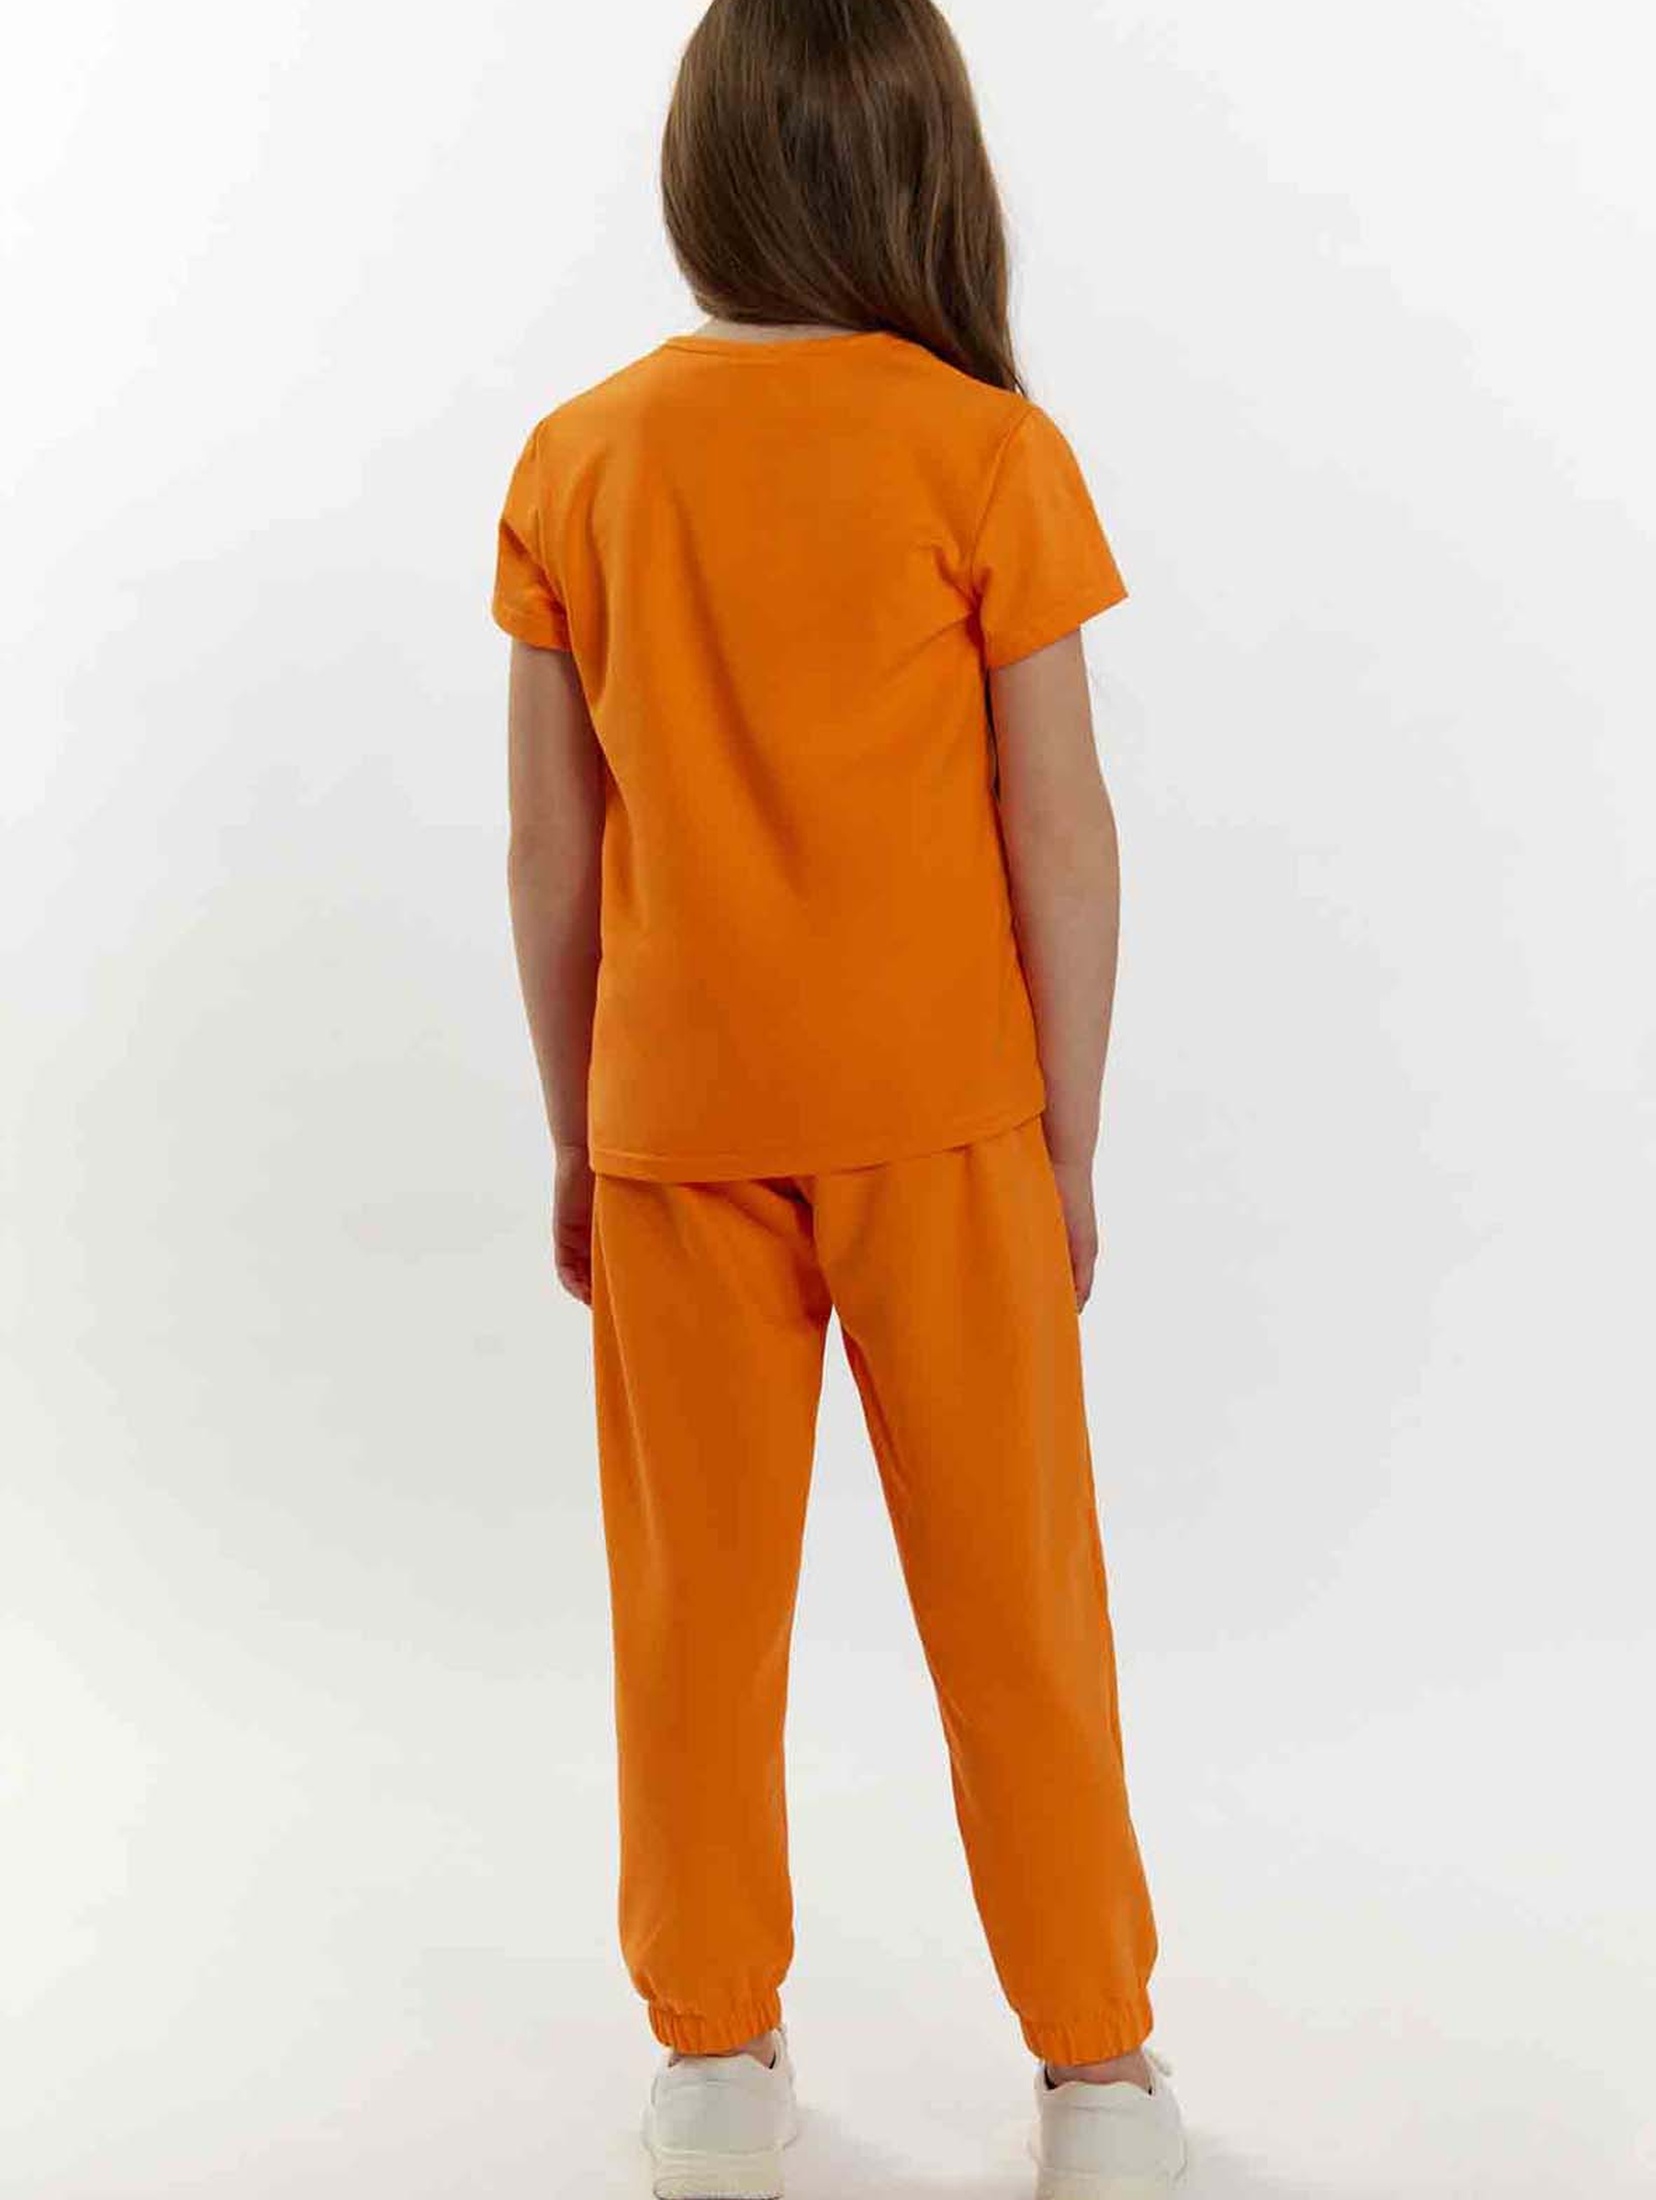 Pomarańczowy t-shirt dla małej dziewczynki z napisem Tup Tup